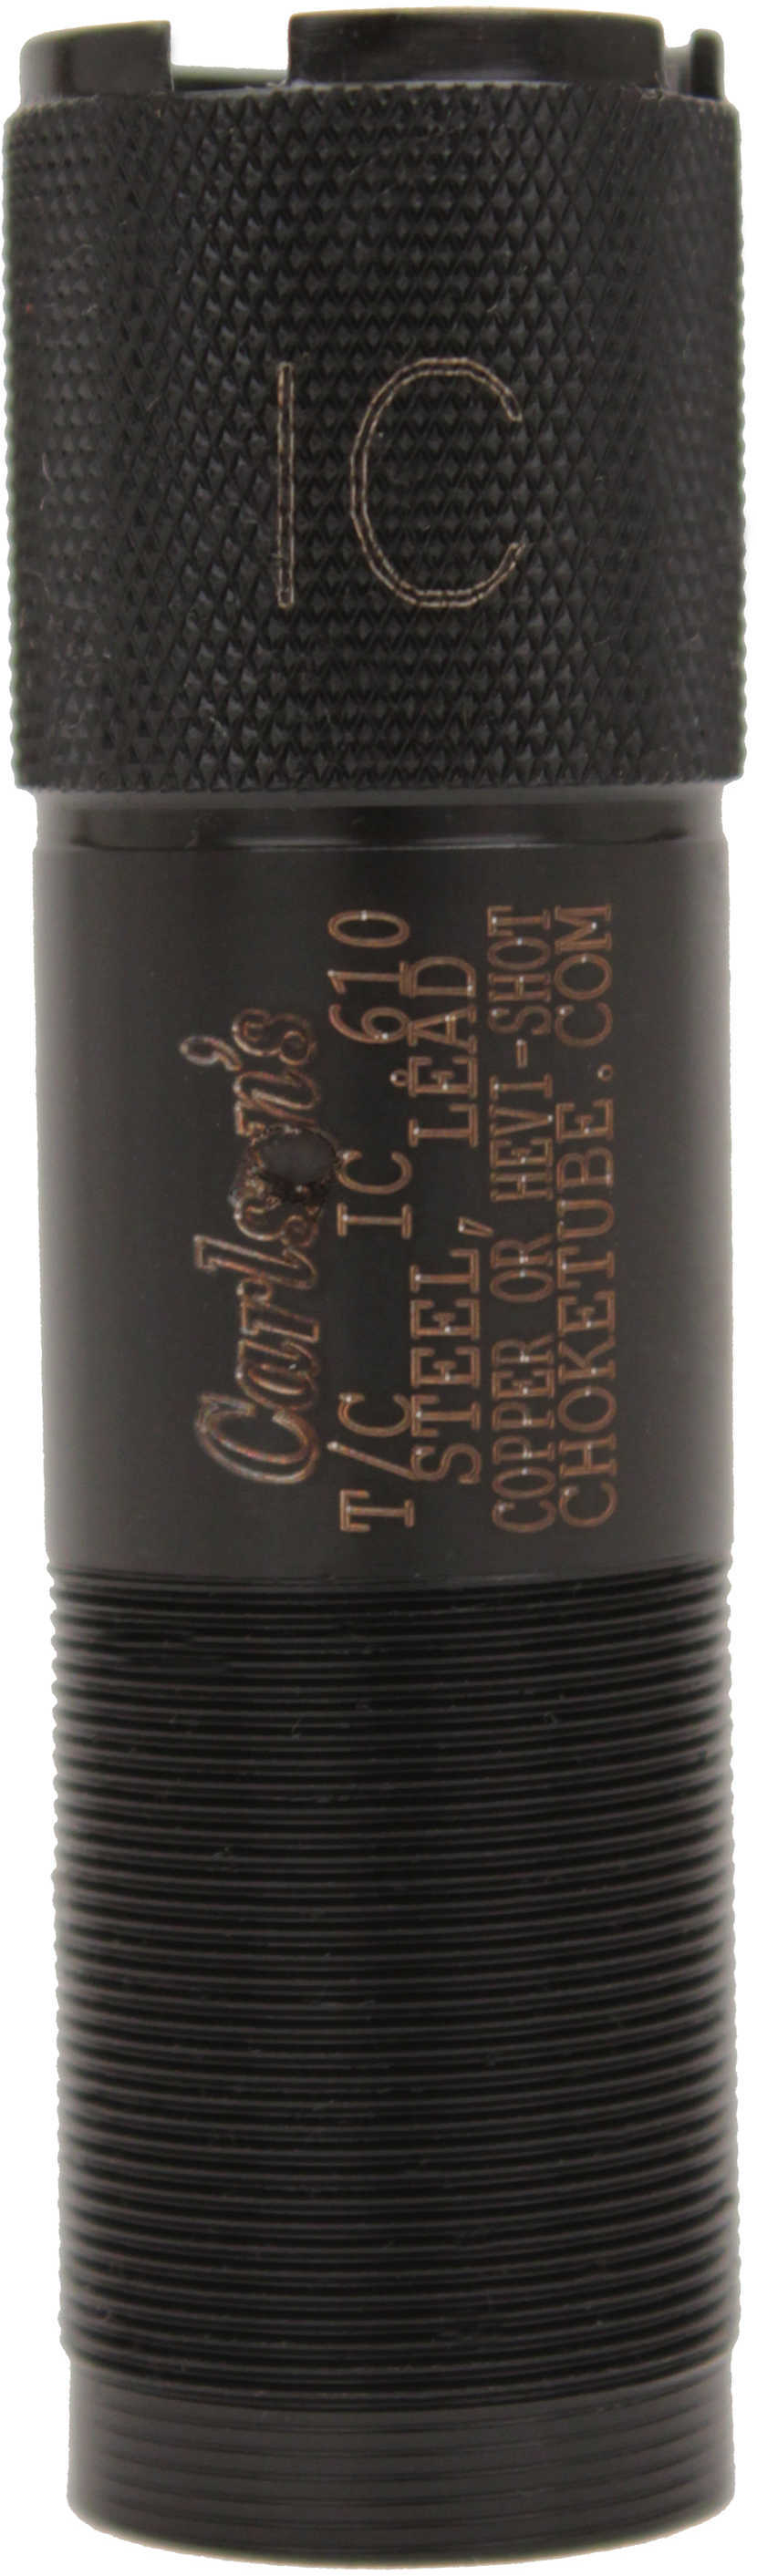 Carlsons Tru-Choke 20 Gauge Sporting Clay Choke Tube Improved Cylinder 31082